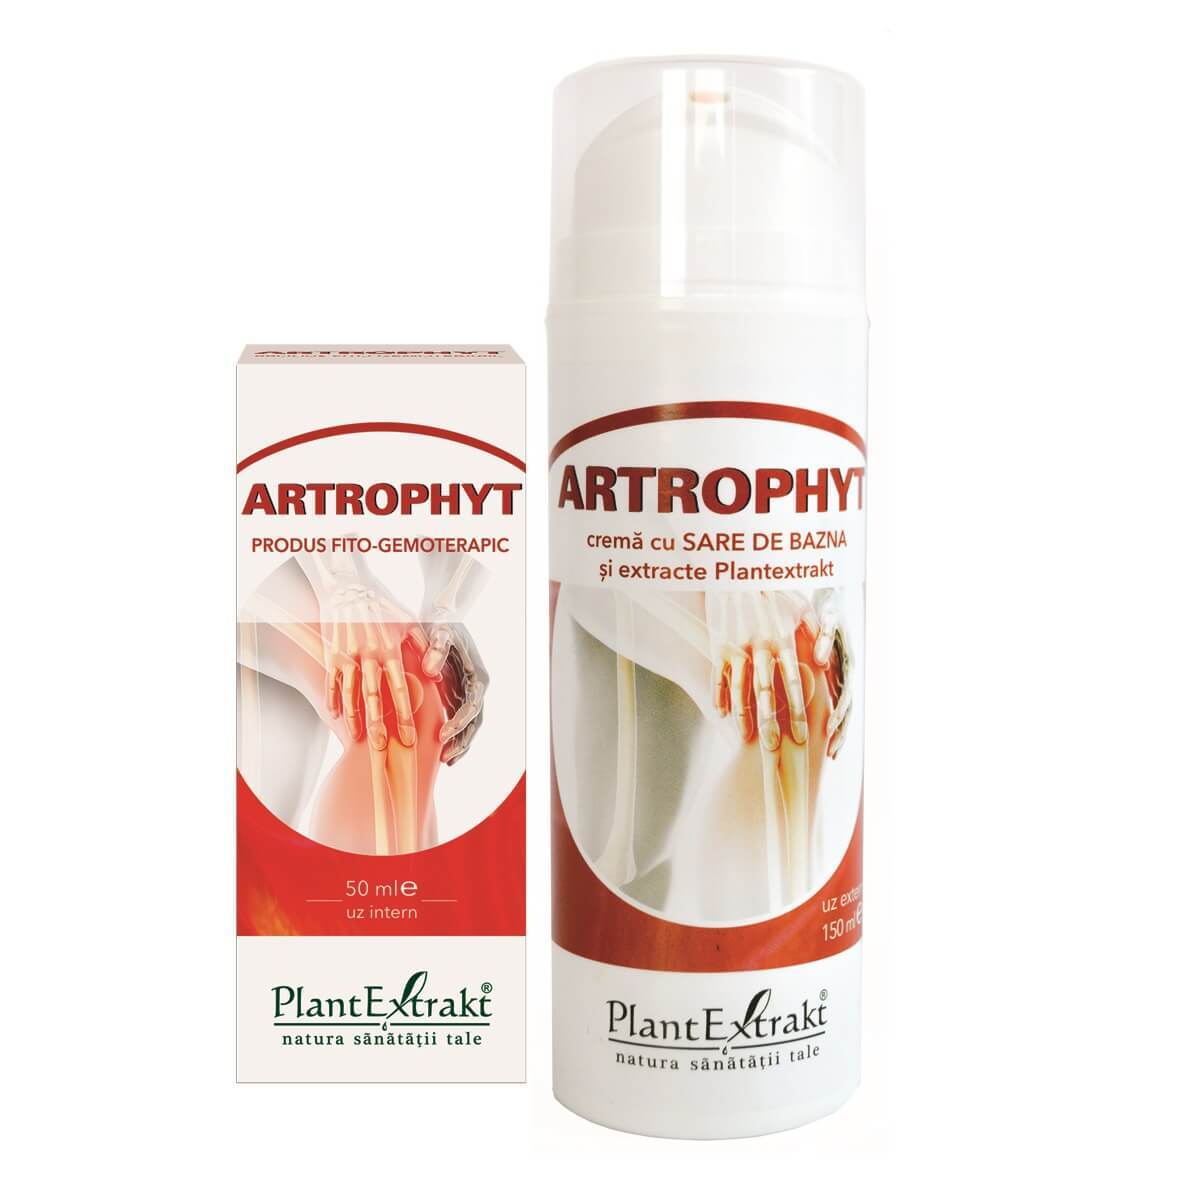 Artrophyt cremă cu sare bazna, 150ml, Plant Extract Vitamine si suplimente